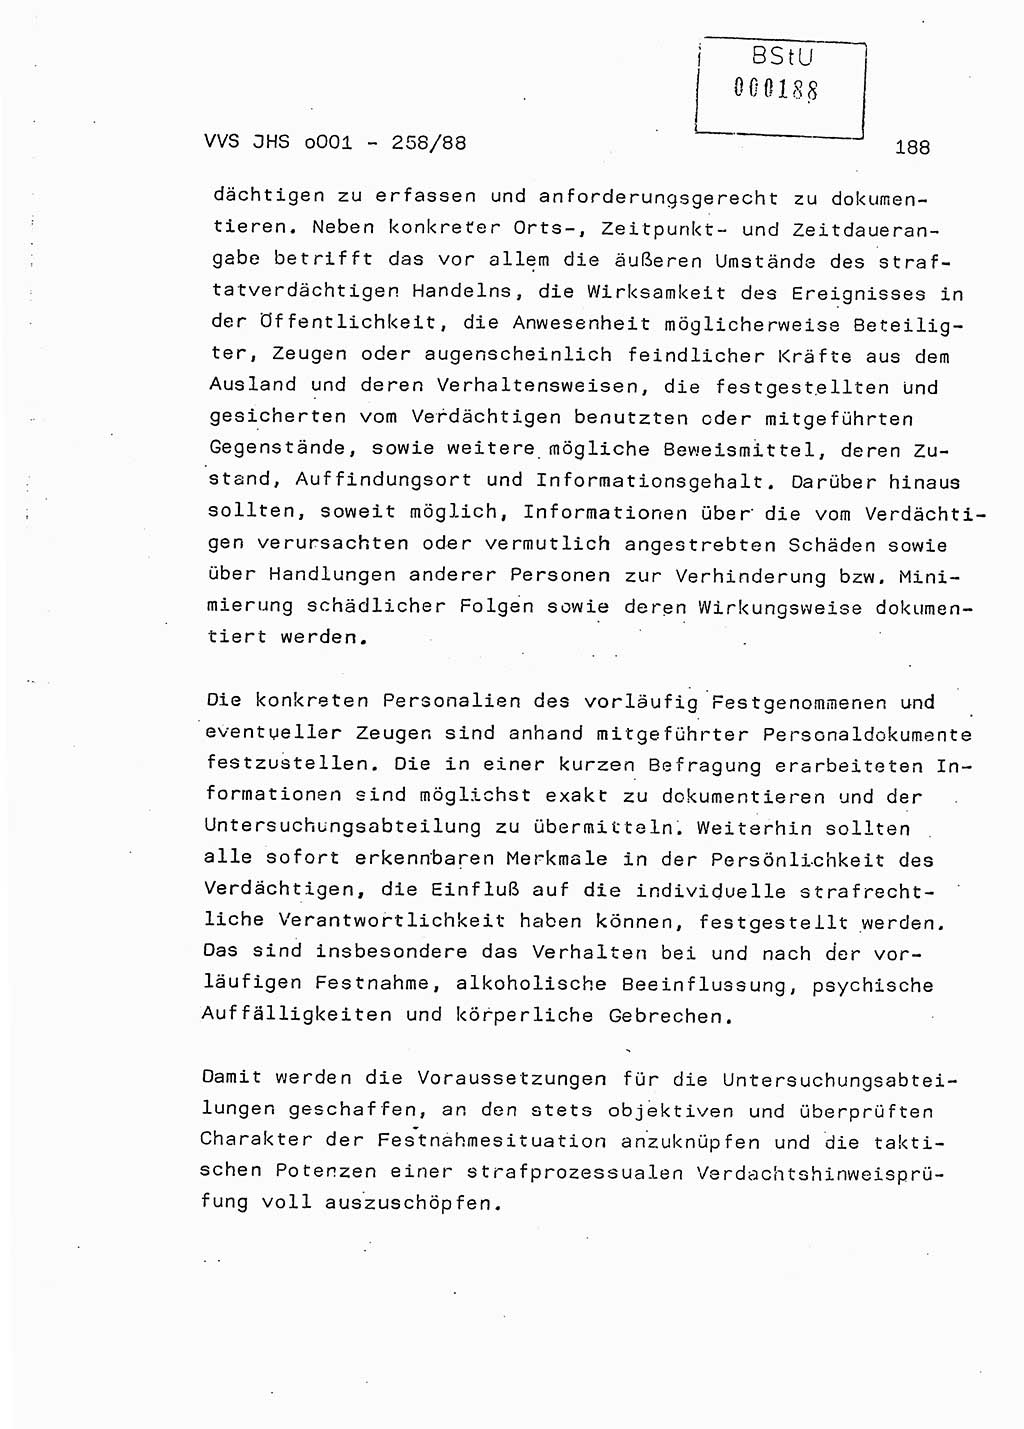 Dissertation, Oberleutnant Uwe Kärsten (JHS), Hauptmann Dr. Joachim Henkel (JHS), Oberstleutnant Werner Mählitz (Leiter der Abt. Ⅸ BV Rostock), Oberstleutnant Jürgen Tröge (HA Ⅸ/AKG), Oberstleutnant Winfried Ziegler (HA Ⅸ/9), Major Wolf-Rüdiger Wurzler (JHS), Ministerium für Staatssicherheit (MfS) [Deutsche Demokratische Republik (DDR)], Juristische Hochschule (JHS), Vertrauliche Verschlußsache (VVS) o001-258/88, Potsdam 1988, Seite 188 (Diss. MfS DDR JHS VVS o001-258/88 1988, S. 188)